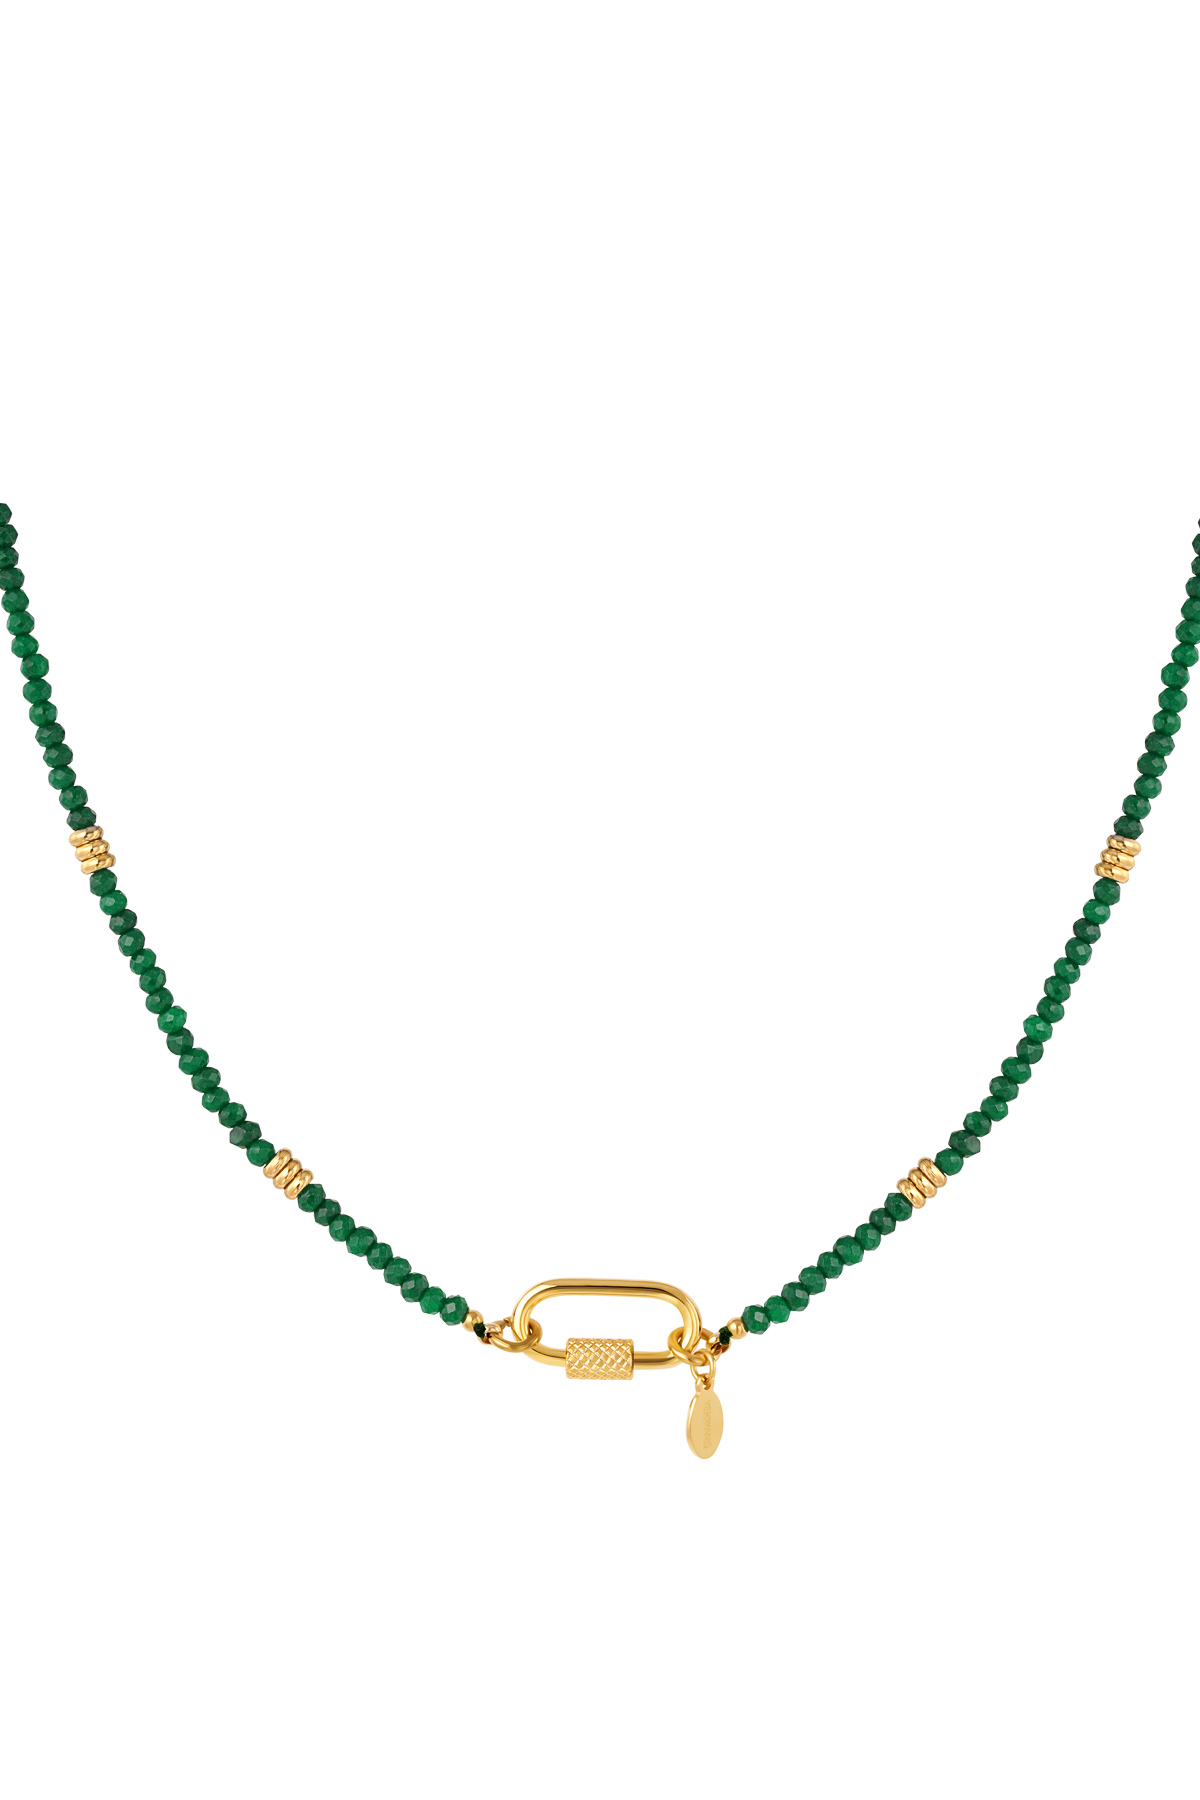 Halskette mit Karabinerverschluss, grüner Stein